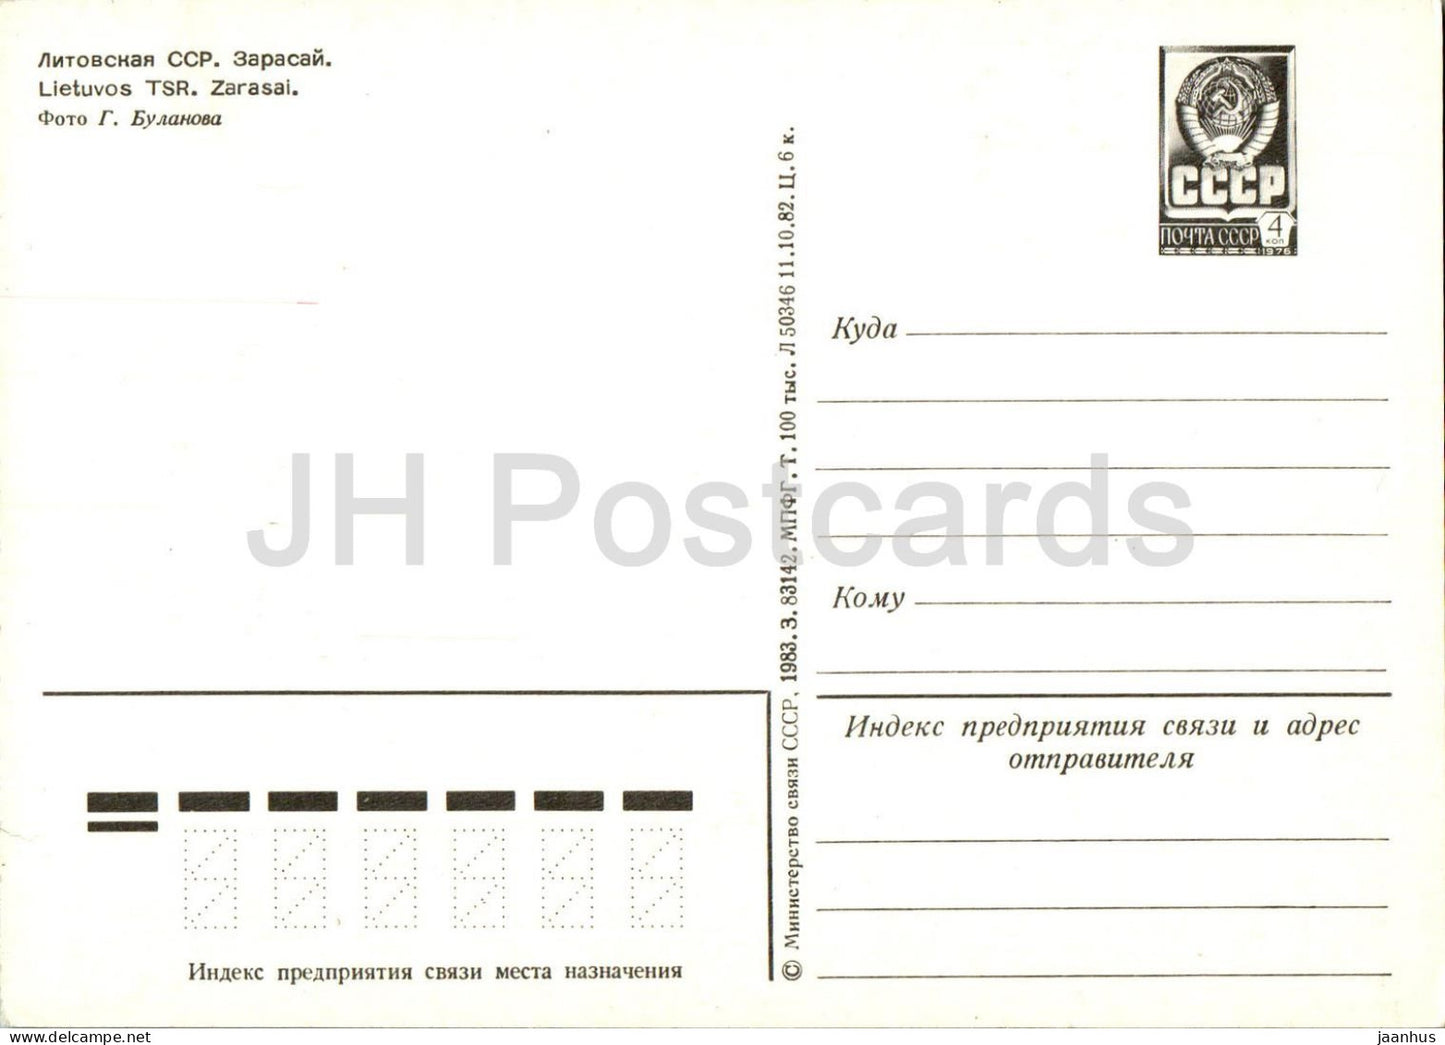 Zarasai - postal stationery - 1983 - Lithuania USSR - unused